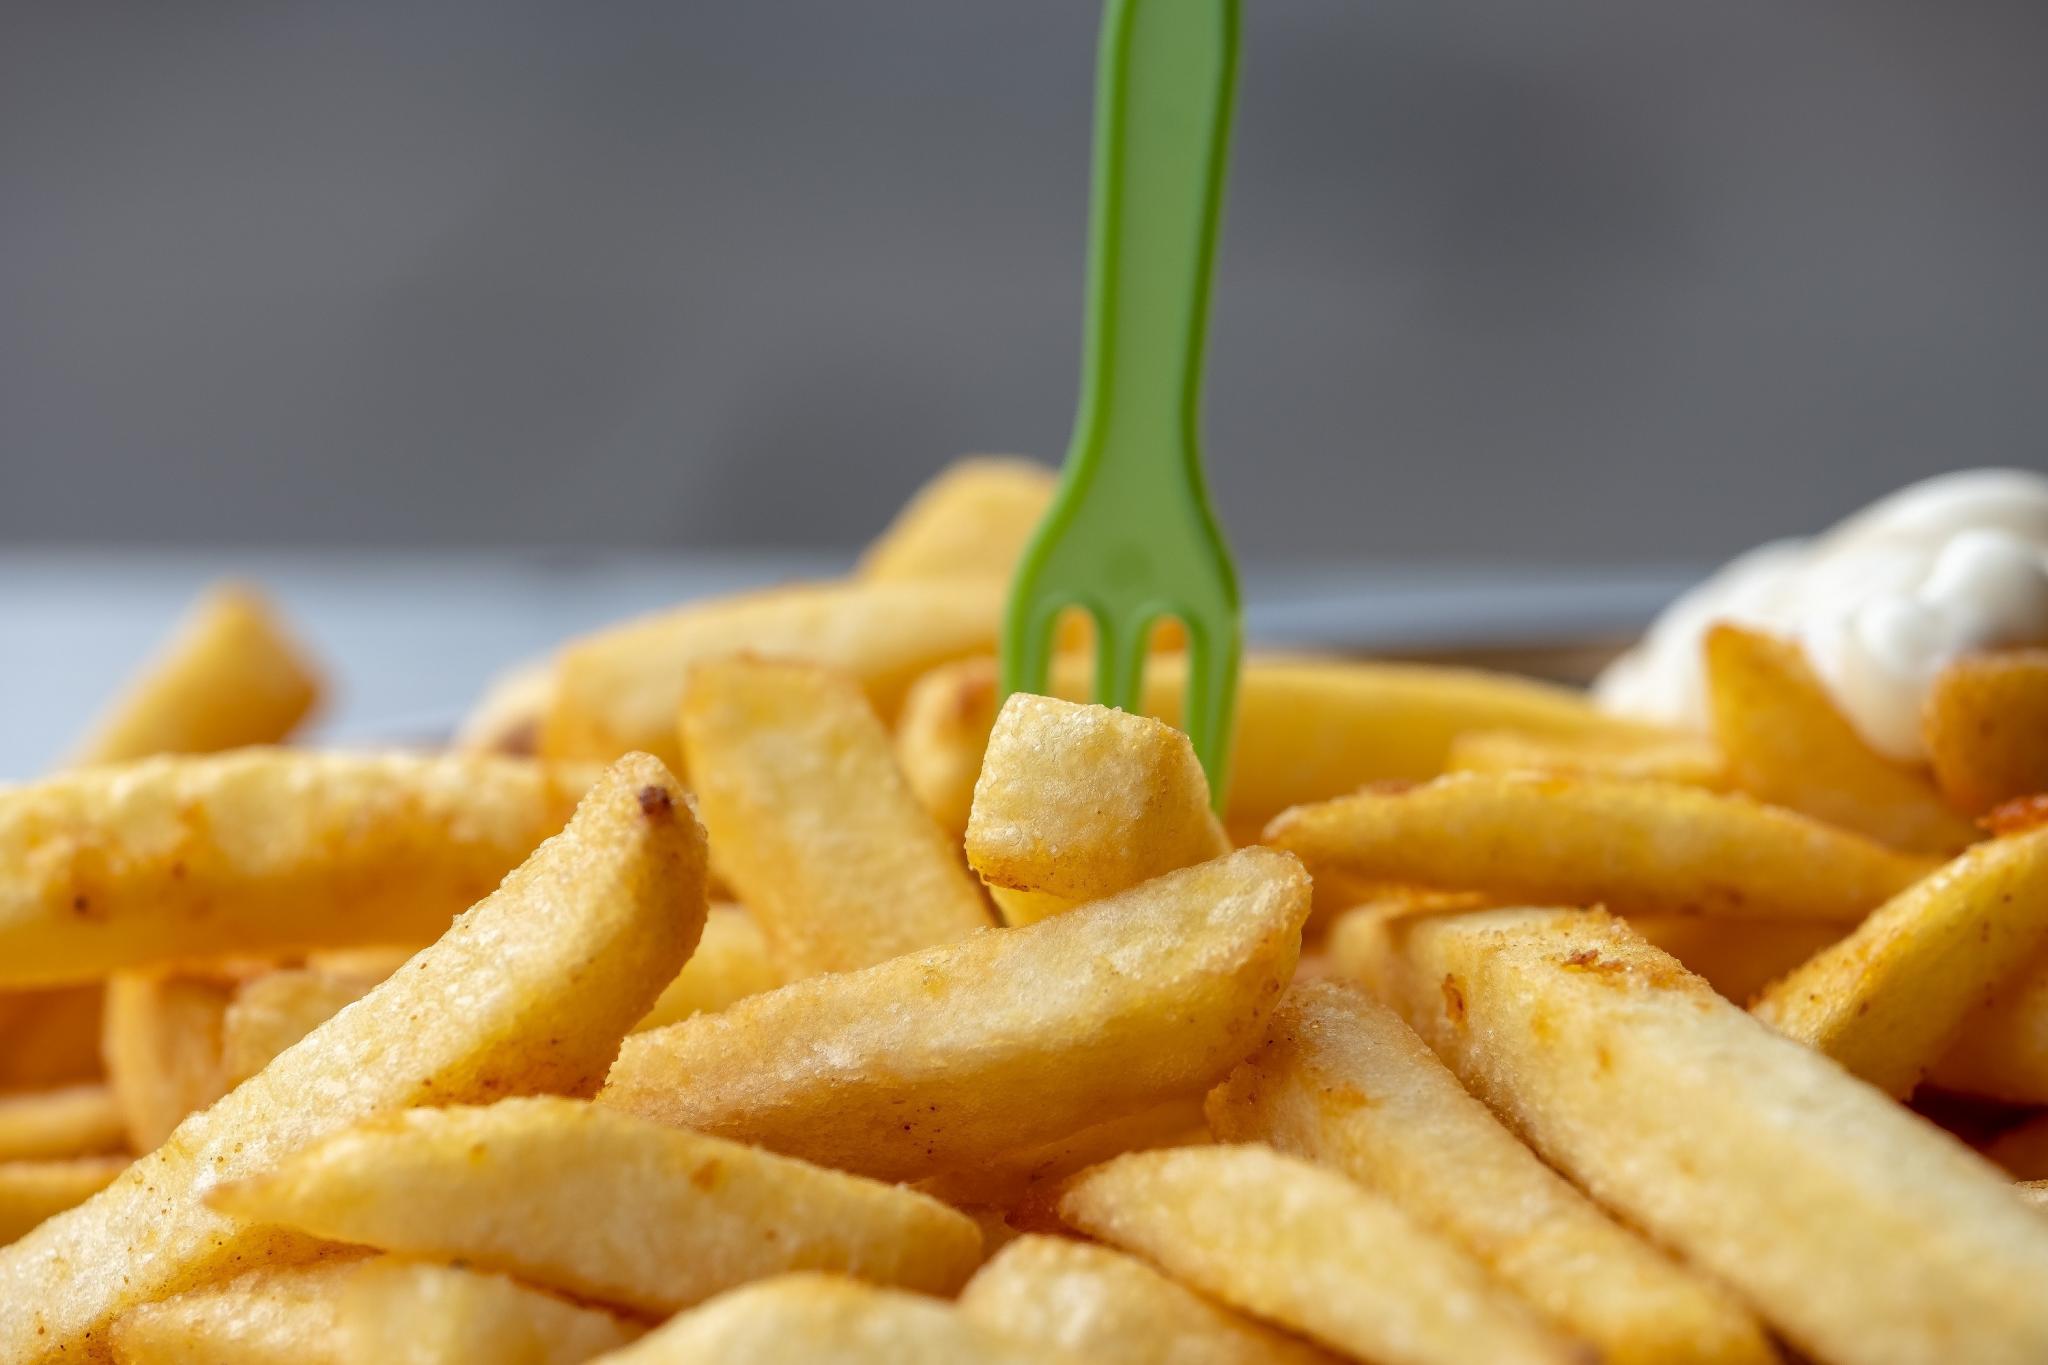 Cinq choses que vous ne saviez pas sur la frite